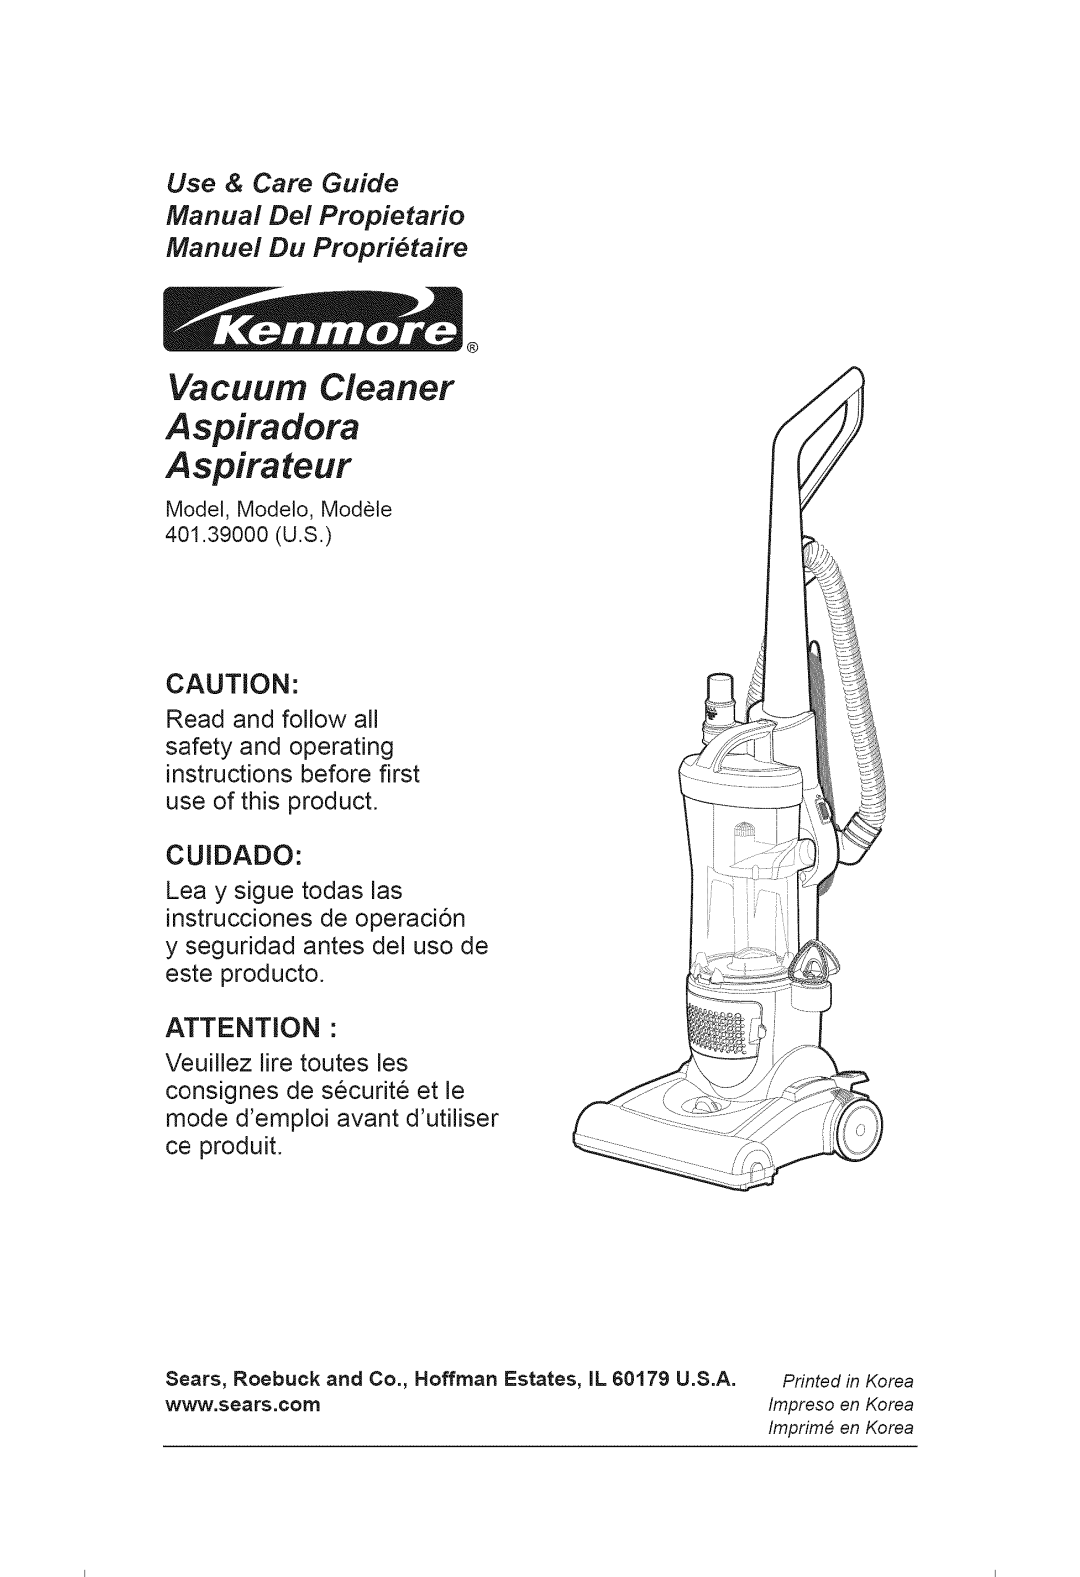 Kenmore 401.39000 manual Vacuum Cleaner Aspiradora Aspirateur, Use & Care Guide 